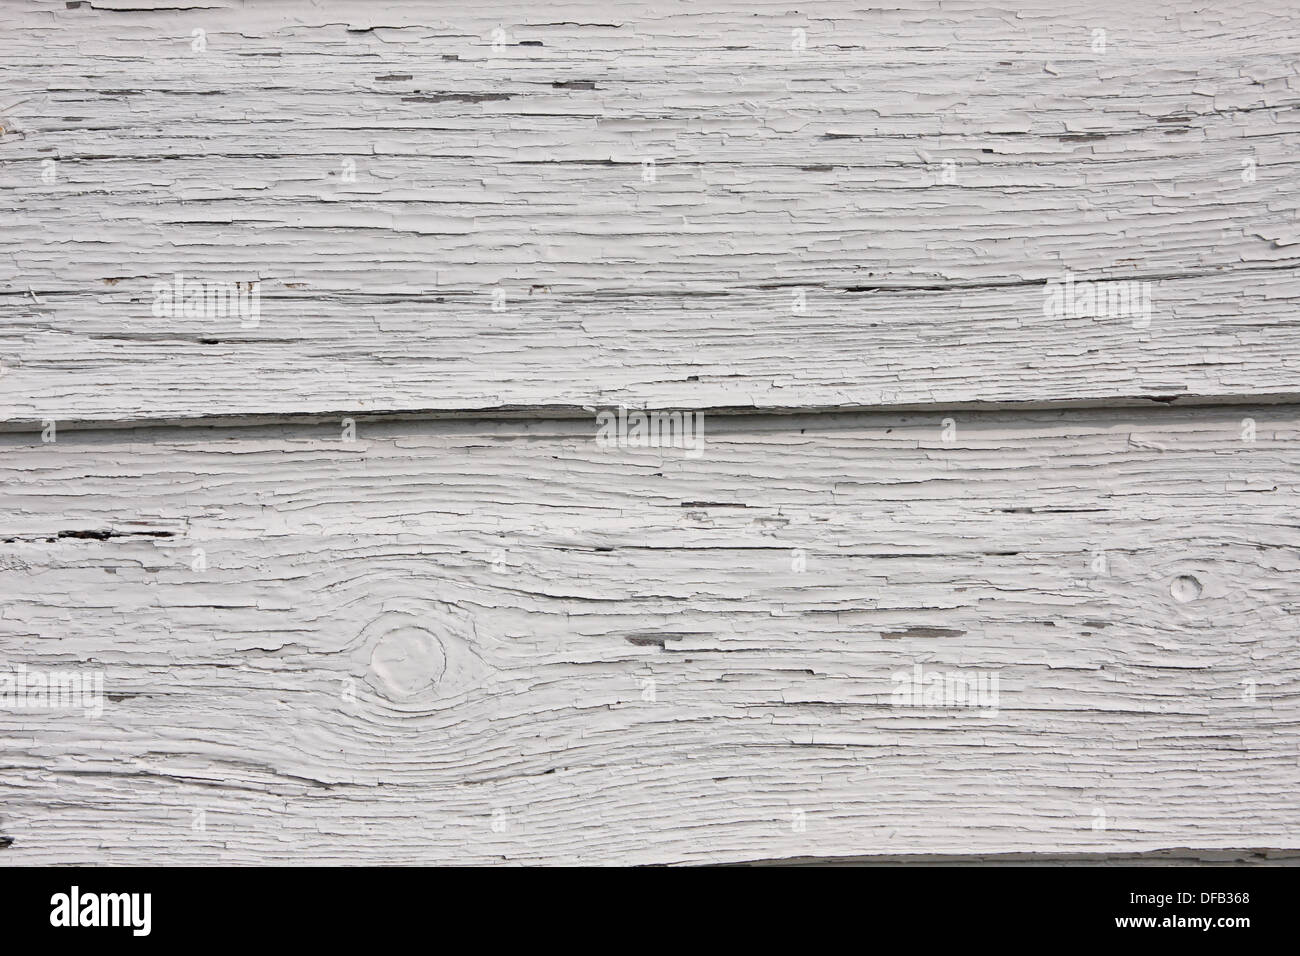 Weiße abblätternde Farbe auf Holz Wetter boarding Stockfoto